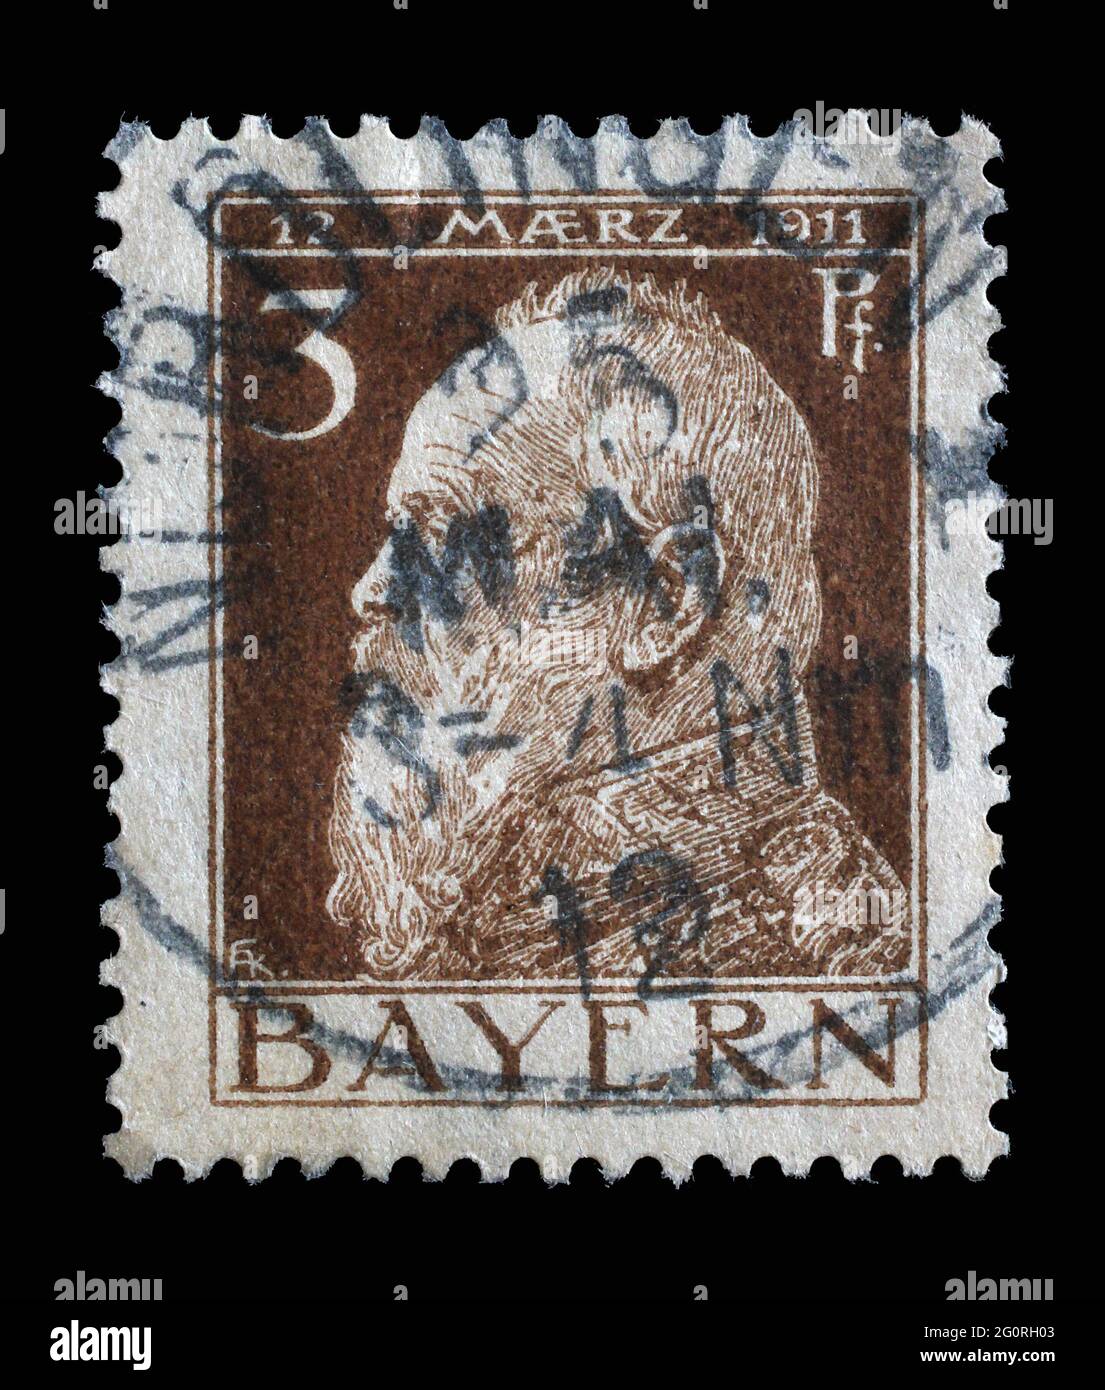 Die in Bayern gedruckte Briefmarke zeigt das Porträt des Prinzregenten Luitpold, um 1911 Stockfoto